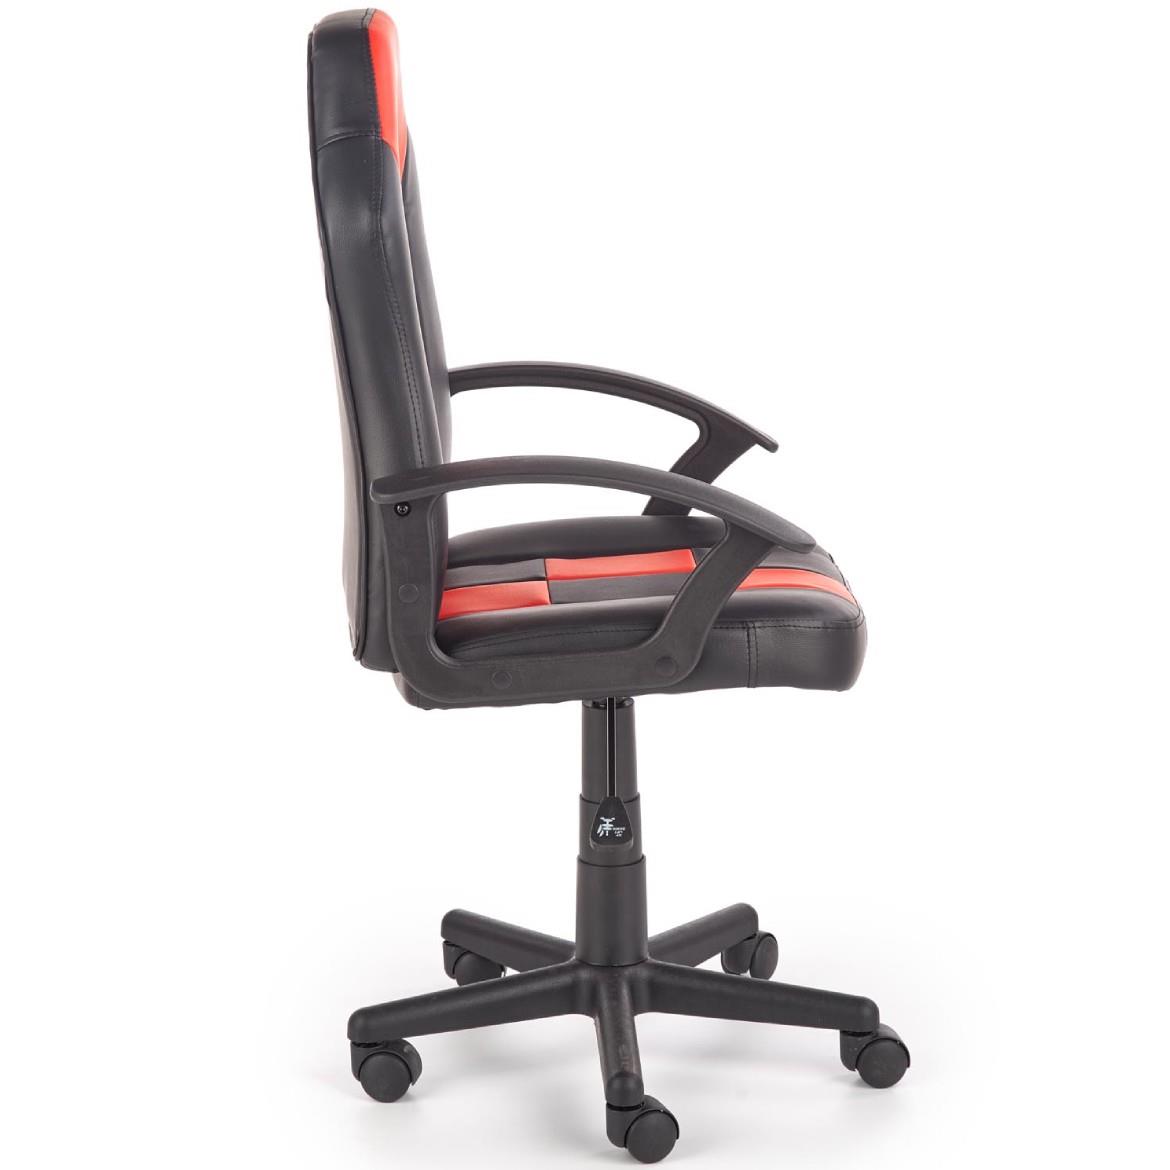 Storm kancelarijska stolica 56x50x105 cm crno/crvena